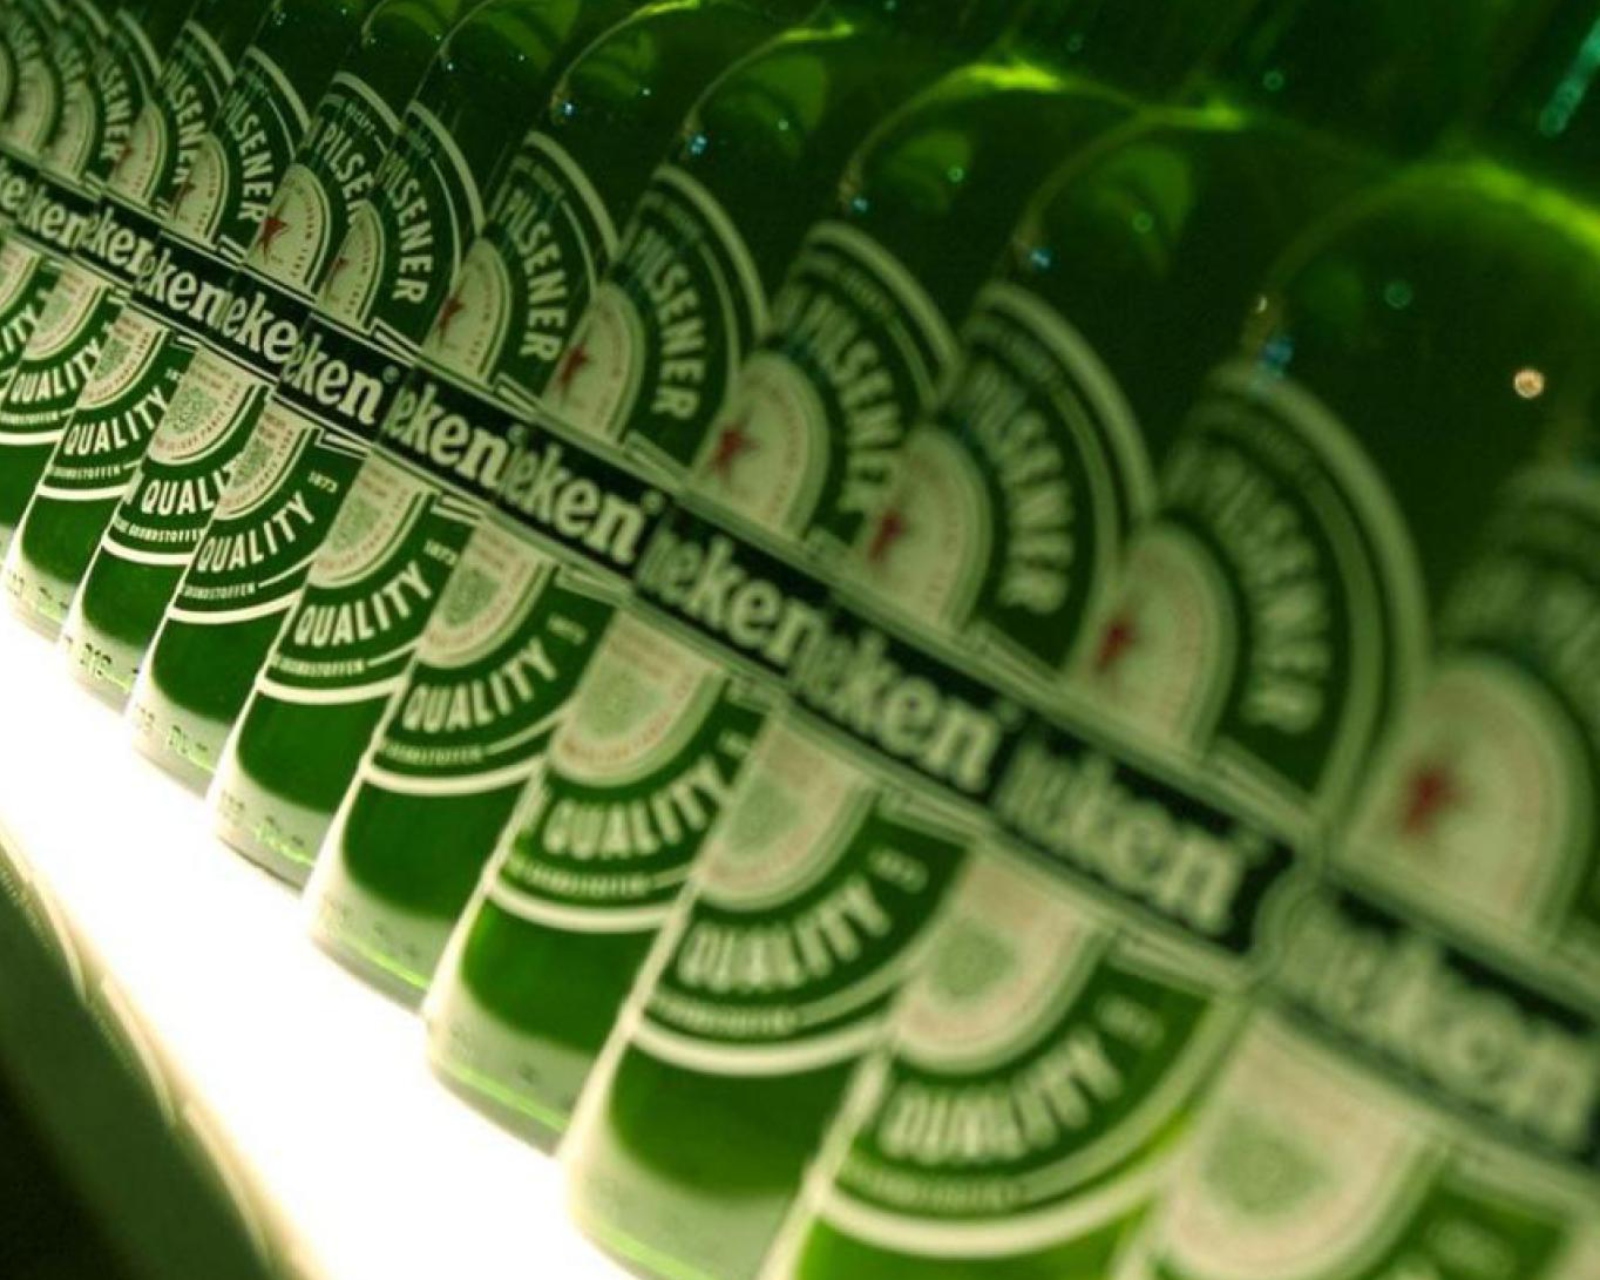 Das Heineken Bottles Wallpaper 1600x1280